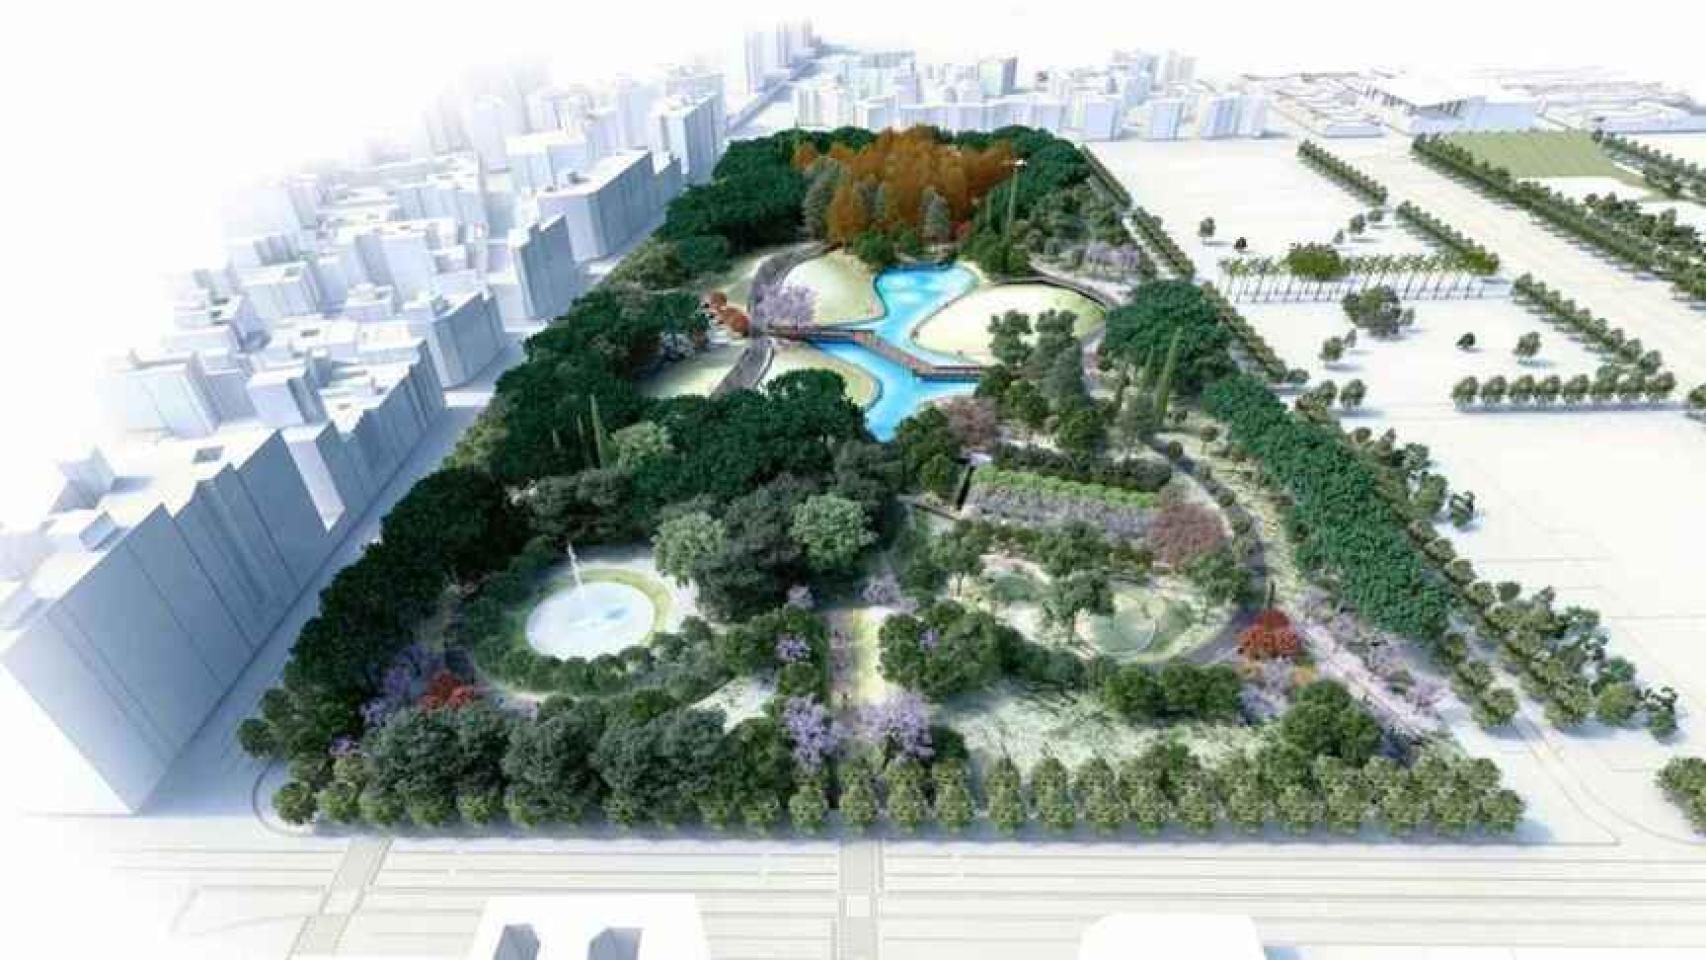 Diseño del parque proyecto en los suelos de Repsol.